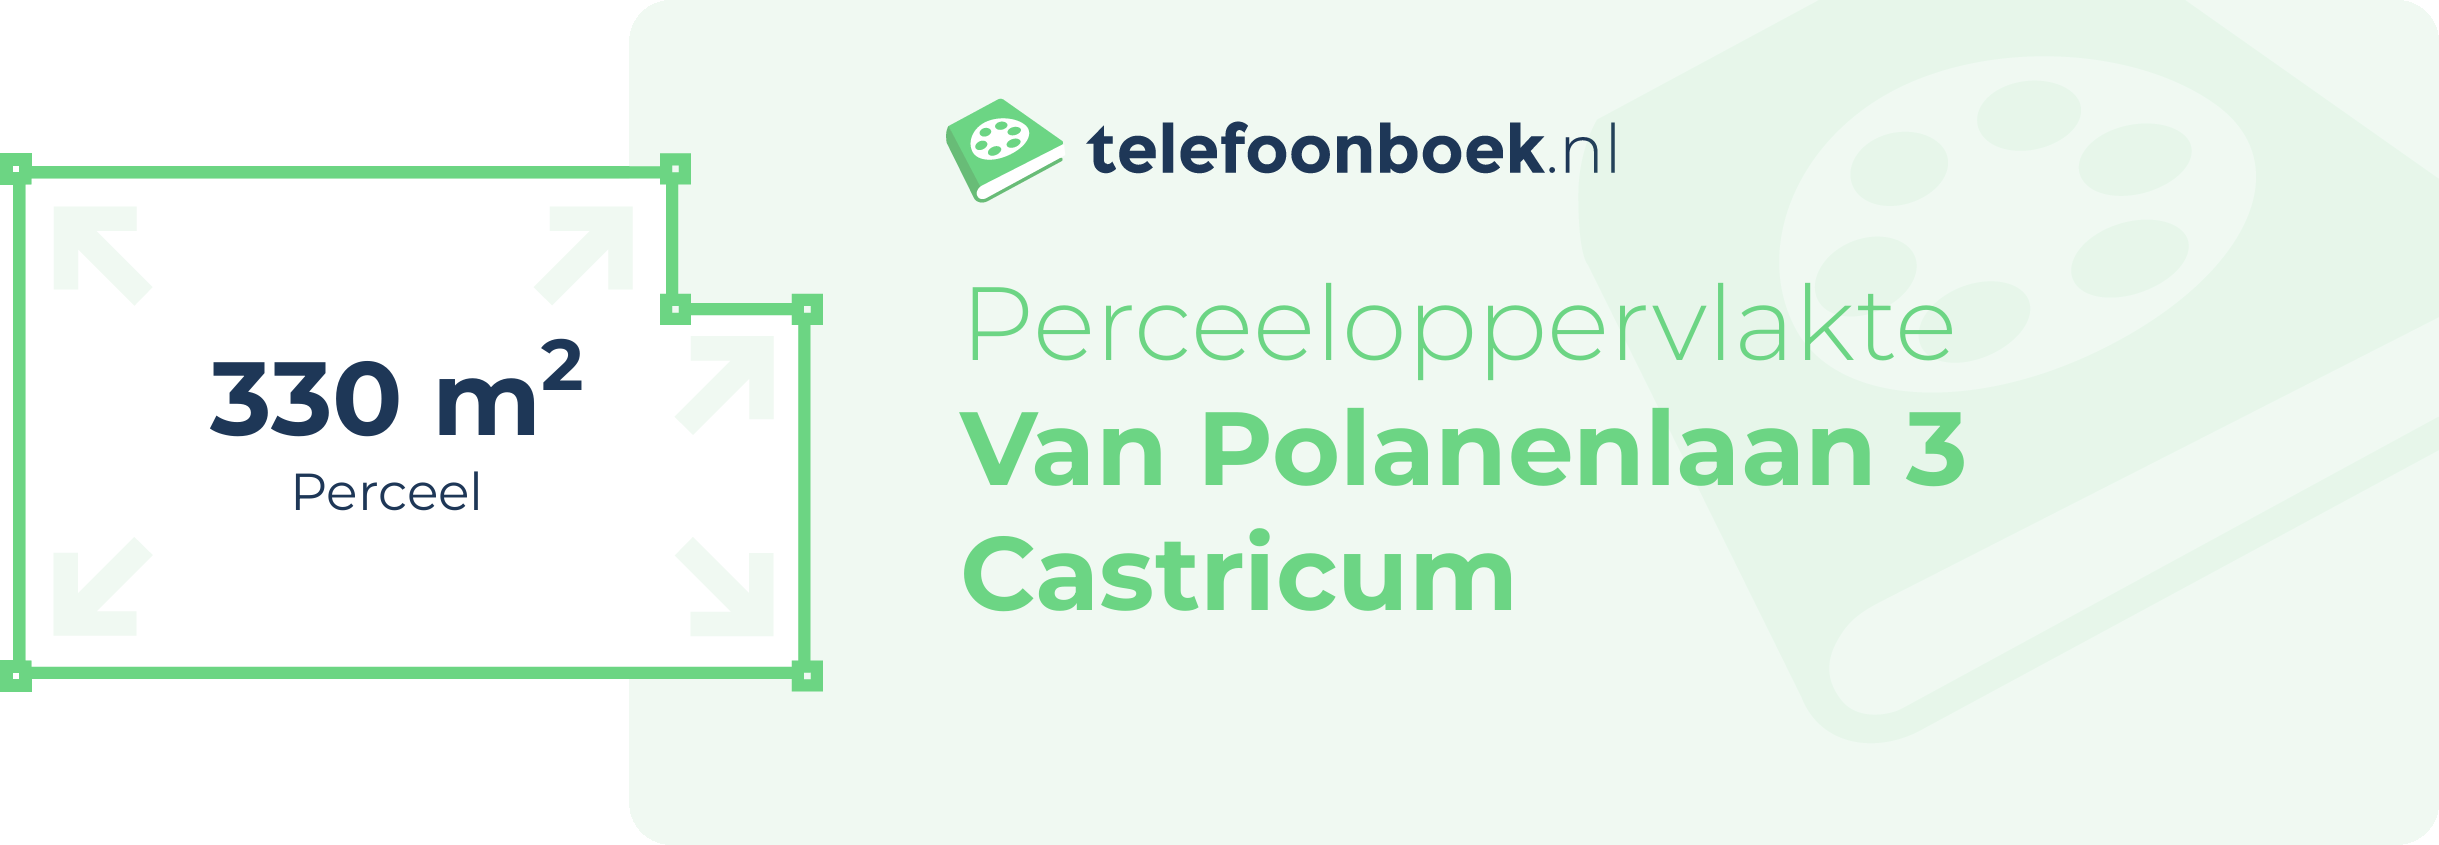 Perceeloppervlakte Van Polanenlaan 3 Castricum